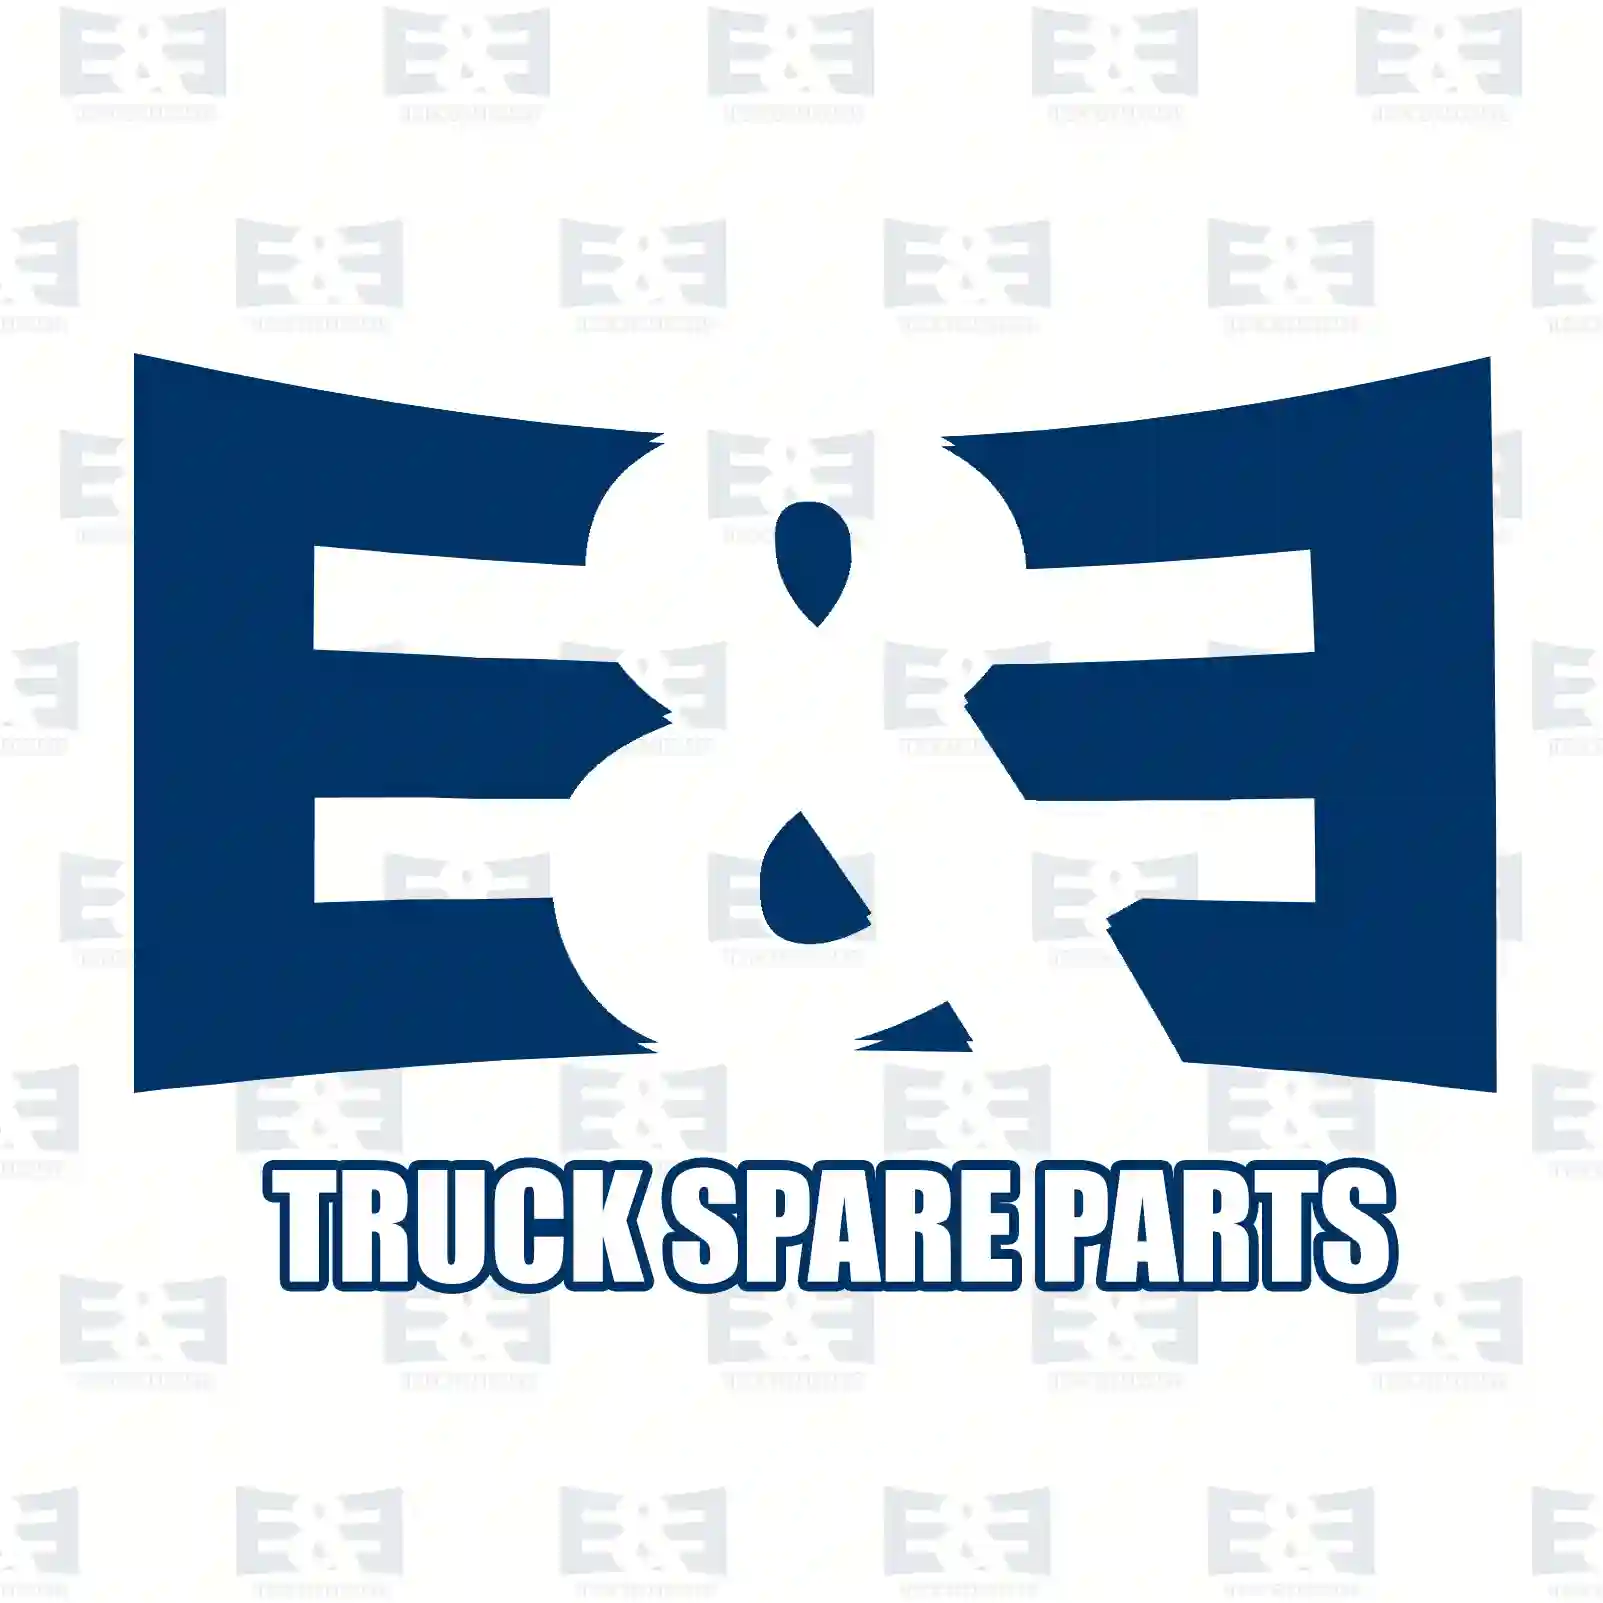 Repair kit, plug, 2E2298460, 1453748S4, 5010306112S4, 1392811S4, 984849S4 ||  2E2298460 E&E Truck Spare Parts | Truck Spare Parts, Auotomotive Spare Parts Repair kit, plug, 2E2298460, 1453748S4, 5010306112S4, 1392811S4, 984849S4 ||  2E2298460 E&E Truck Spare Parts | Truck Spare Parts, Auotomotive Spare Parts